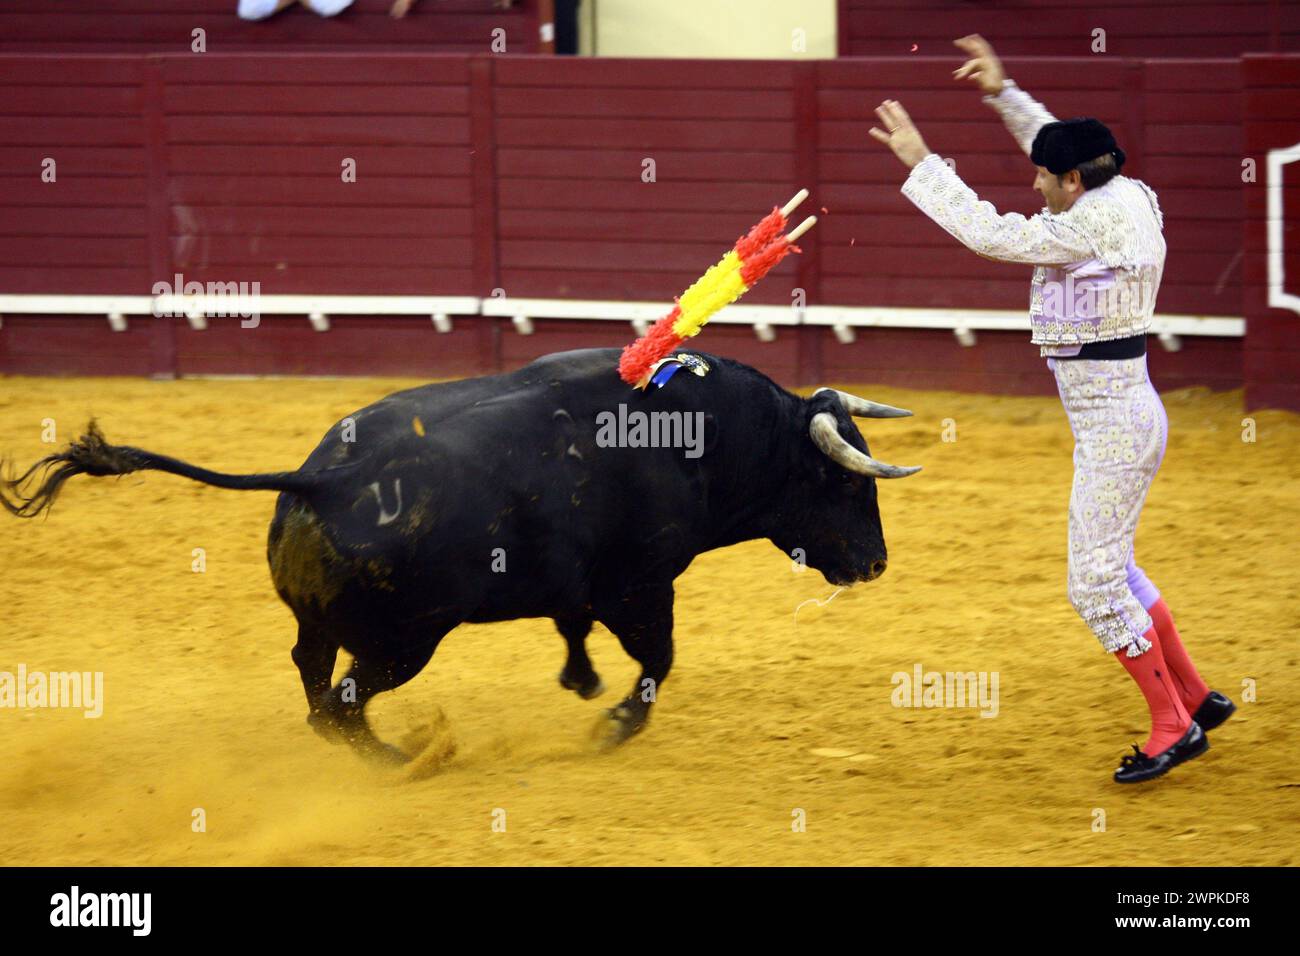 Lisbona corrida con i tori/Lisbon bullfighting with bulls Stock Photo